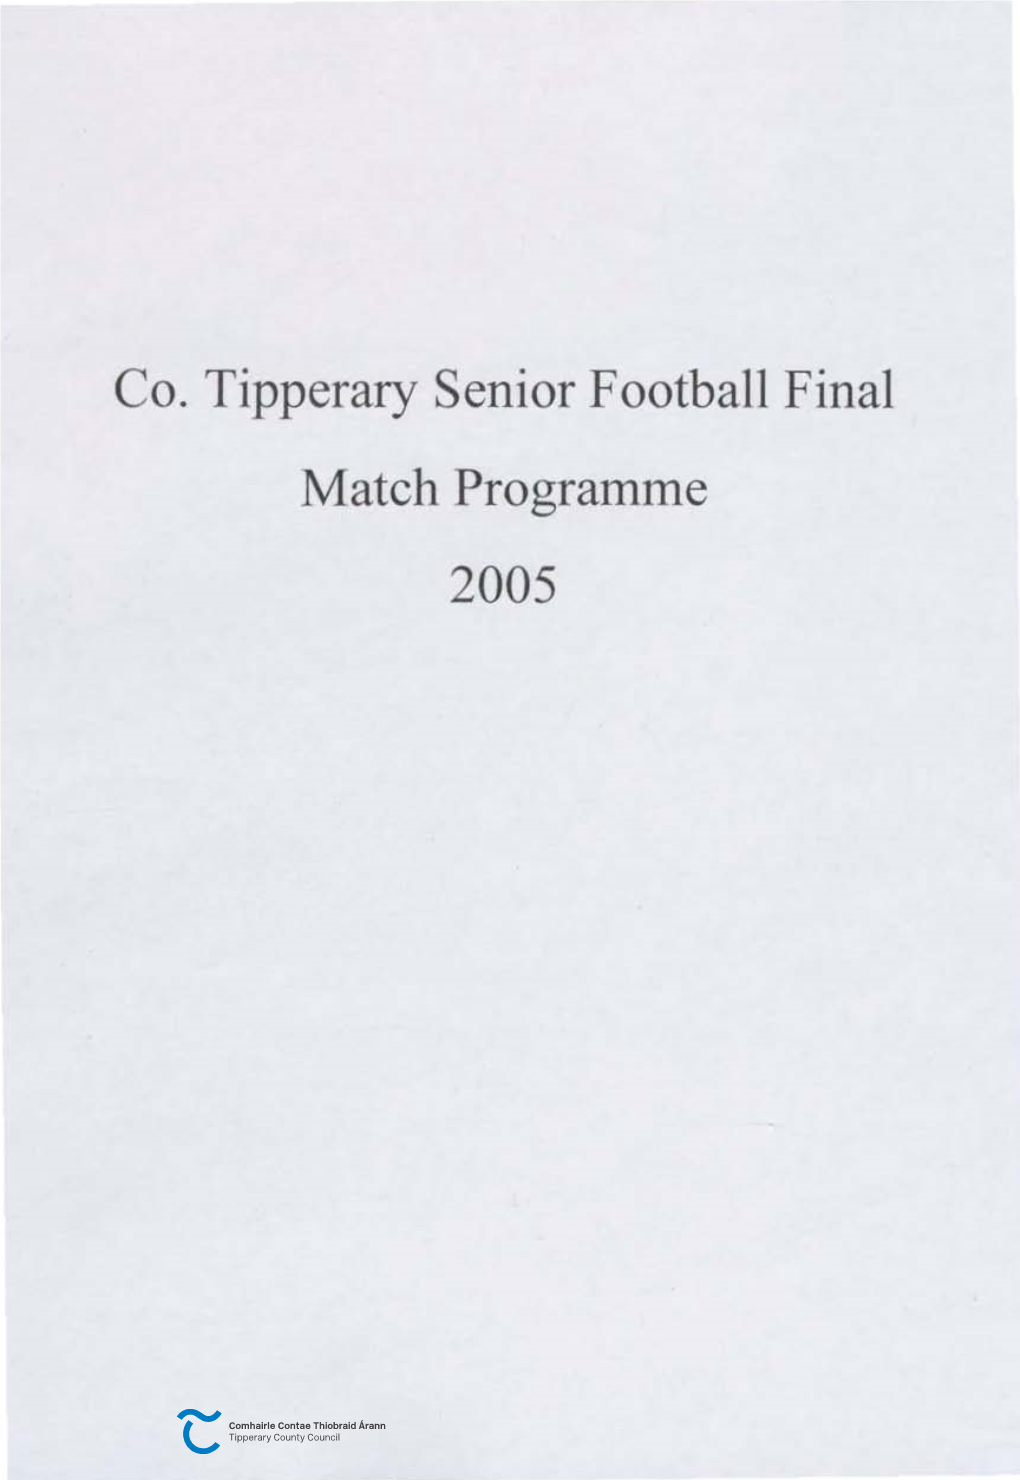 Co. Tipperary Senior Football Final Match Programme 2005